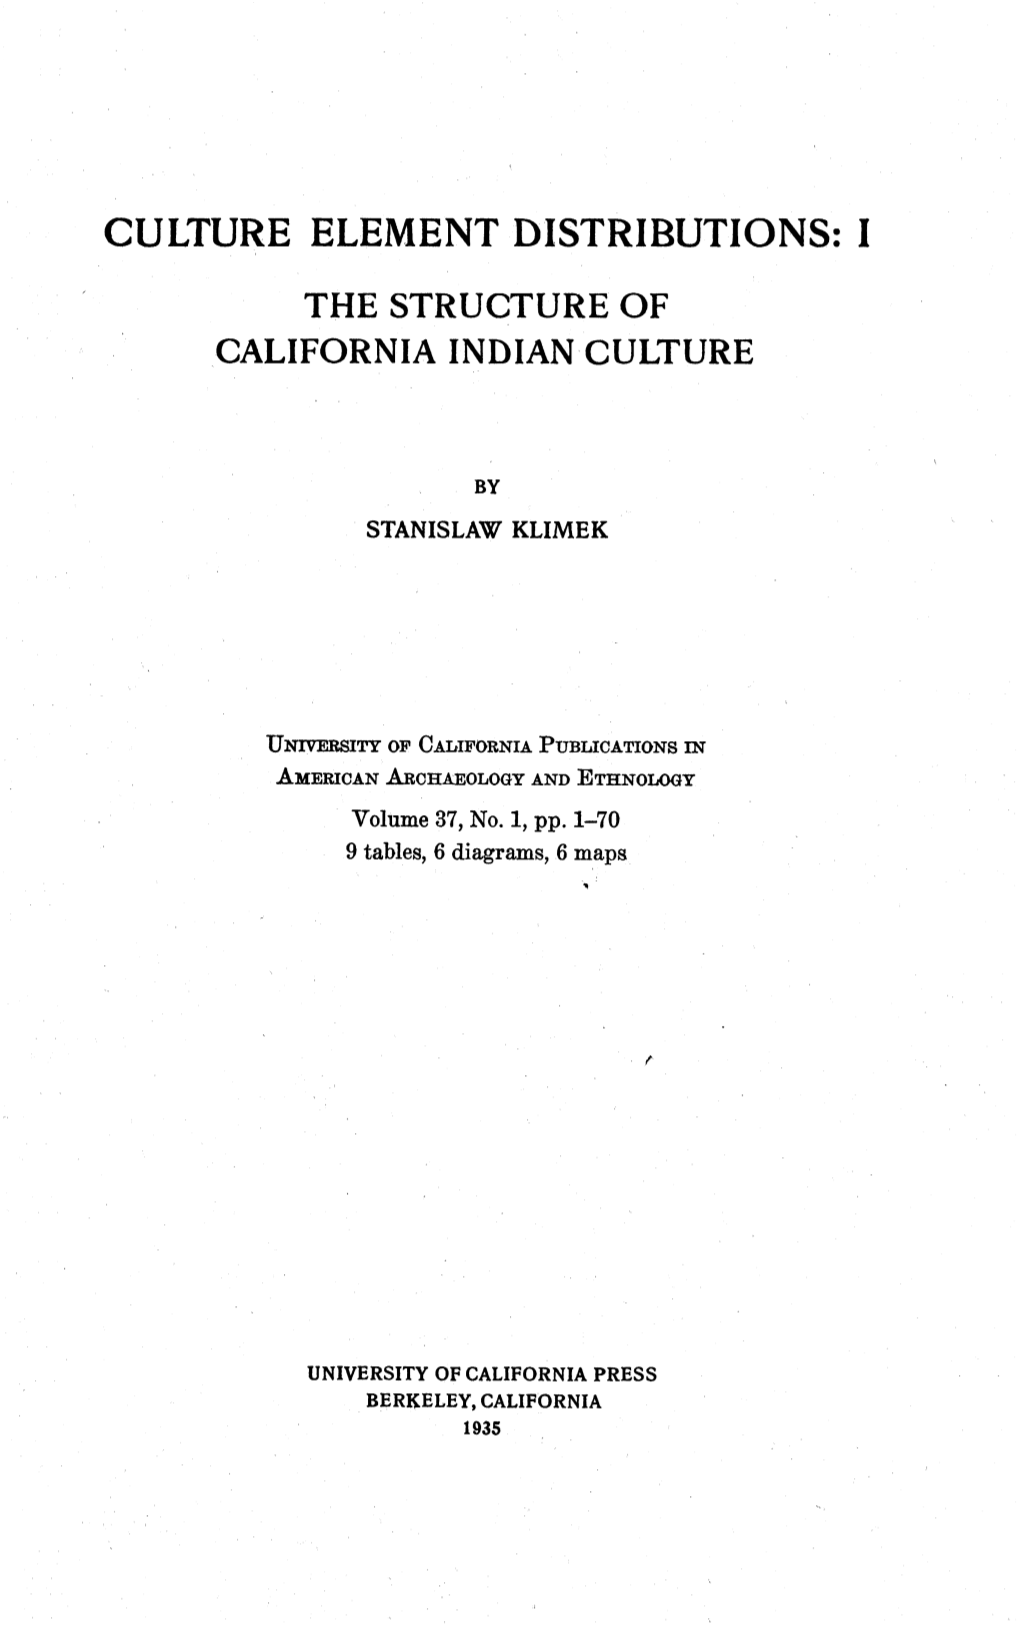 Culture Element Distributions: I California Indian Culture